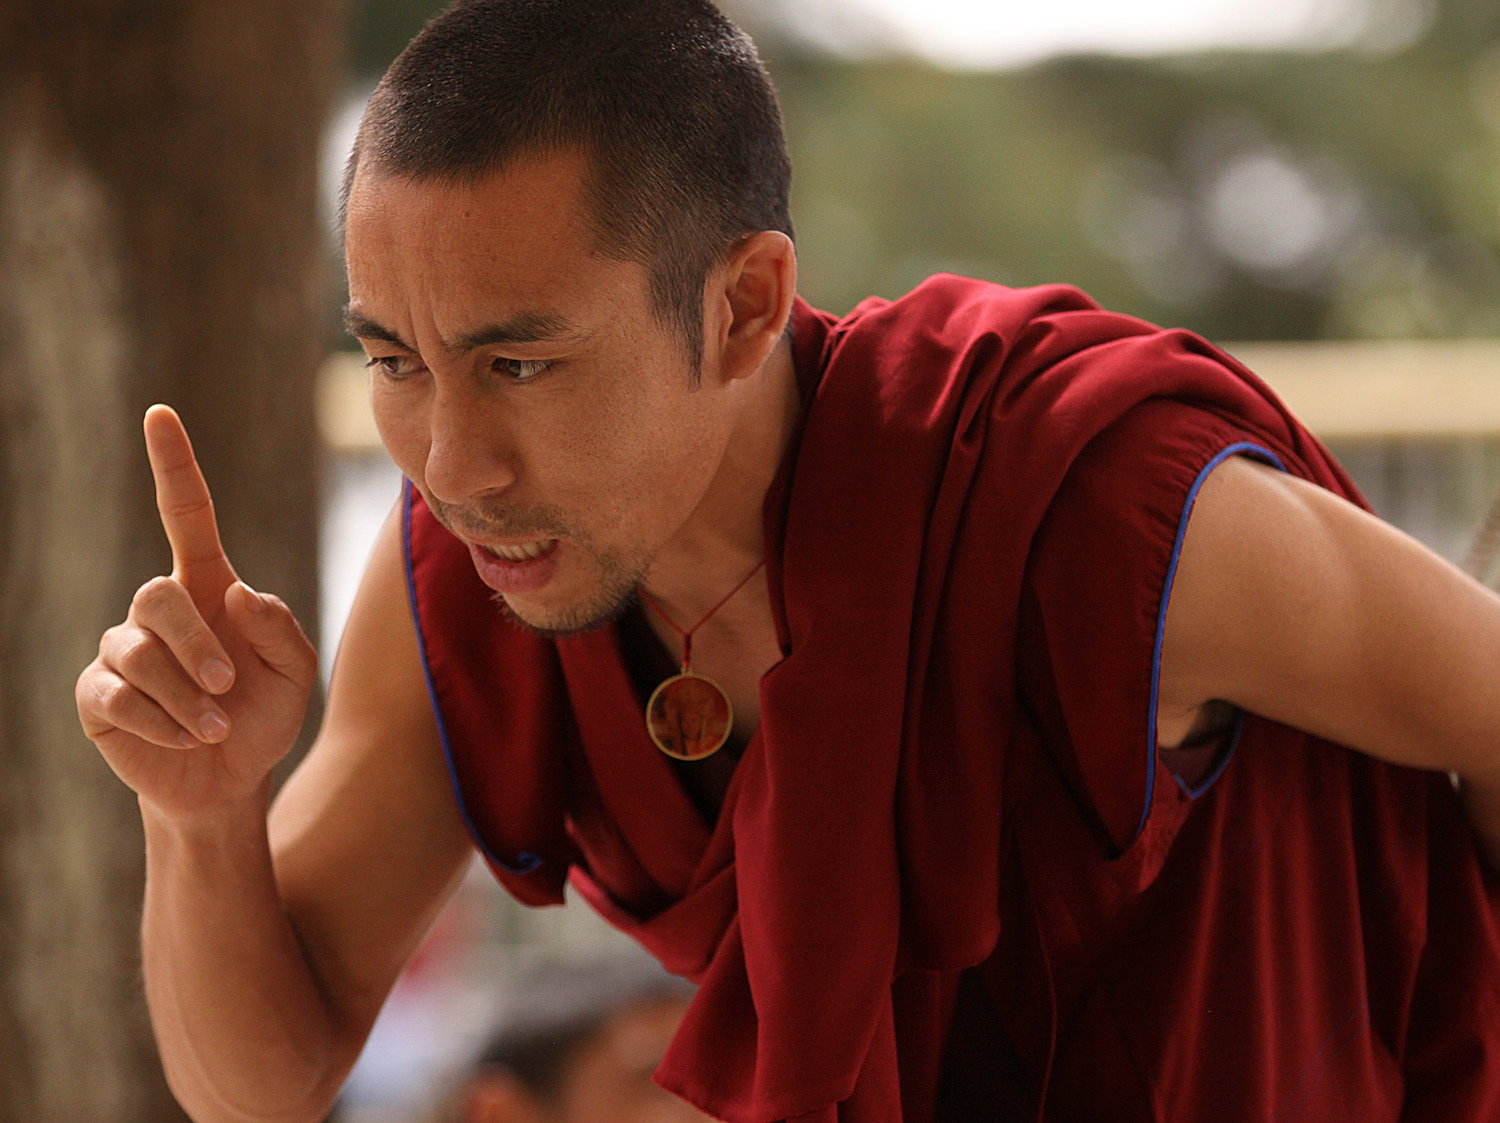 Website Dharmsala debating monk with finger.jpg